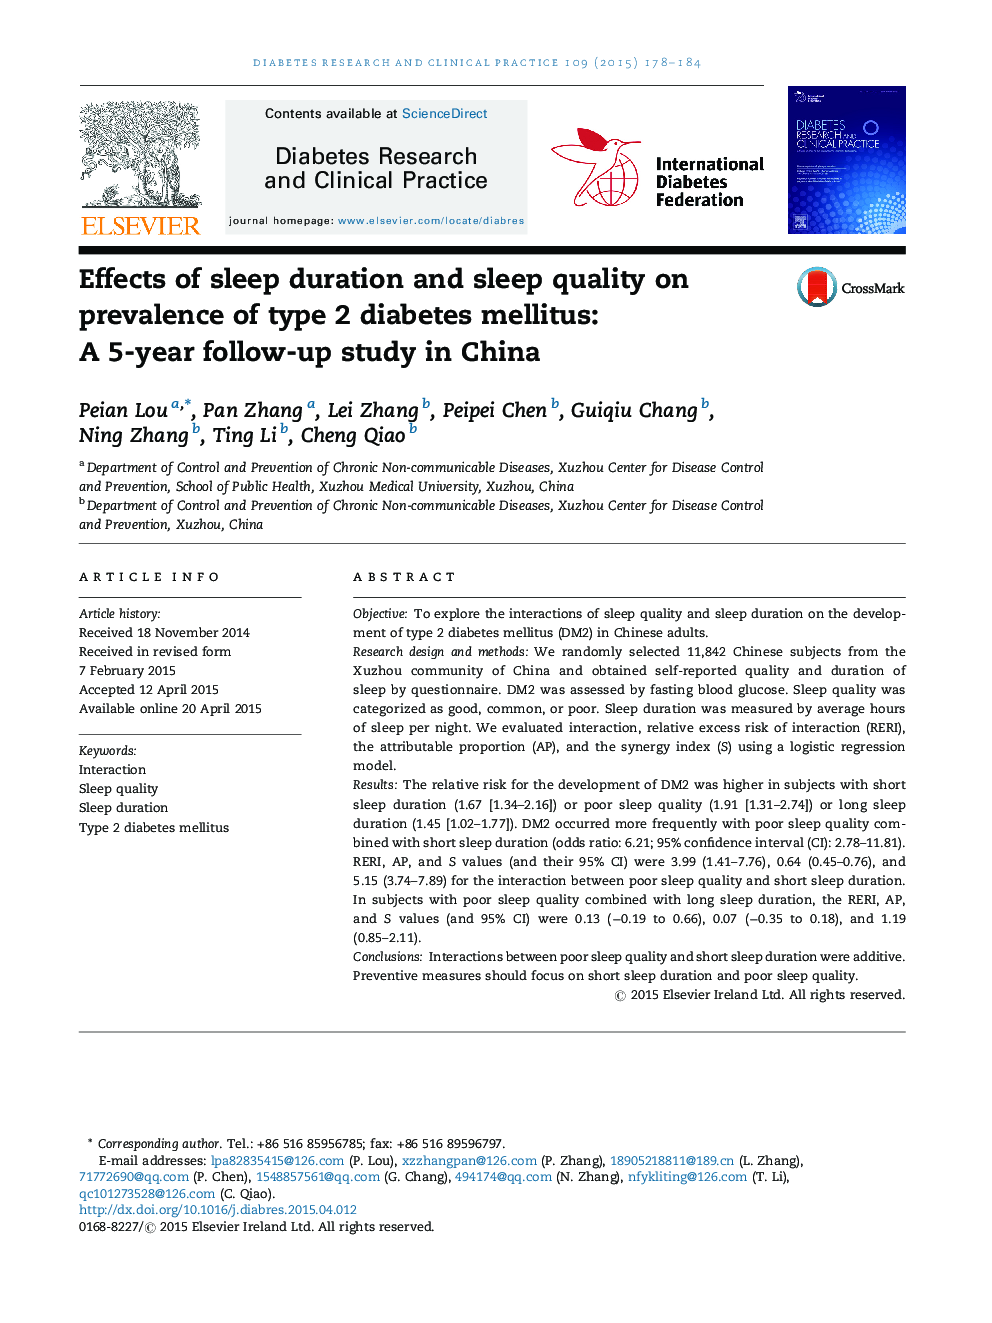 تأثیر مدت خواب و کیفیت خواب بر شیوع دیابت نوع 2: یک مطالعه 5 ساله در چین 